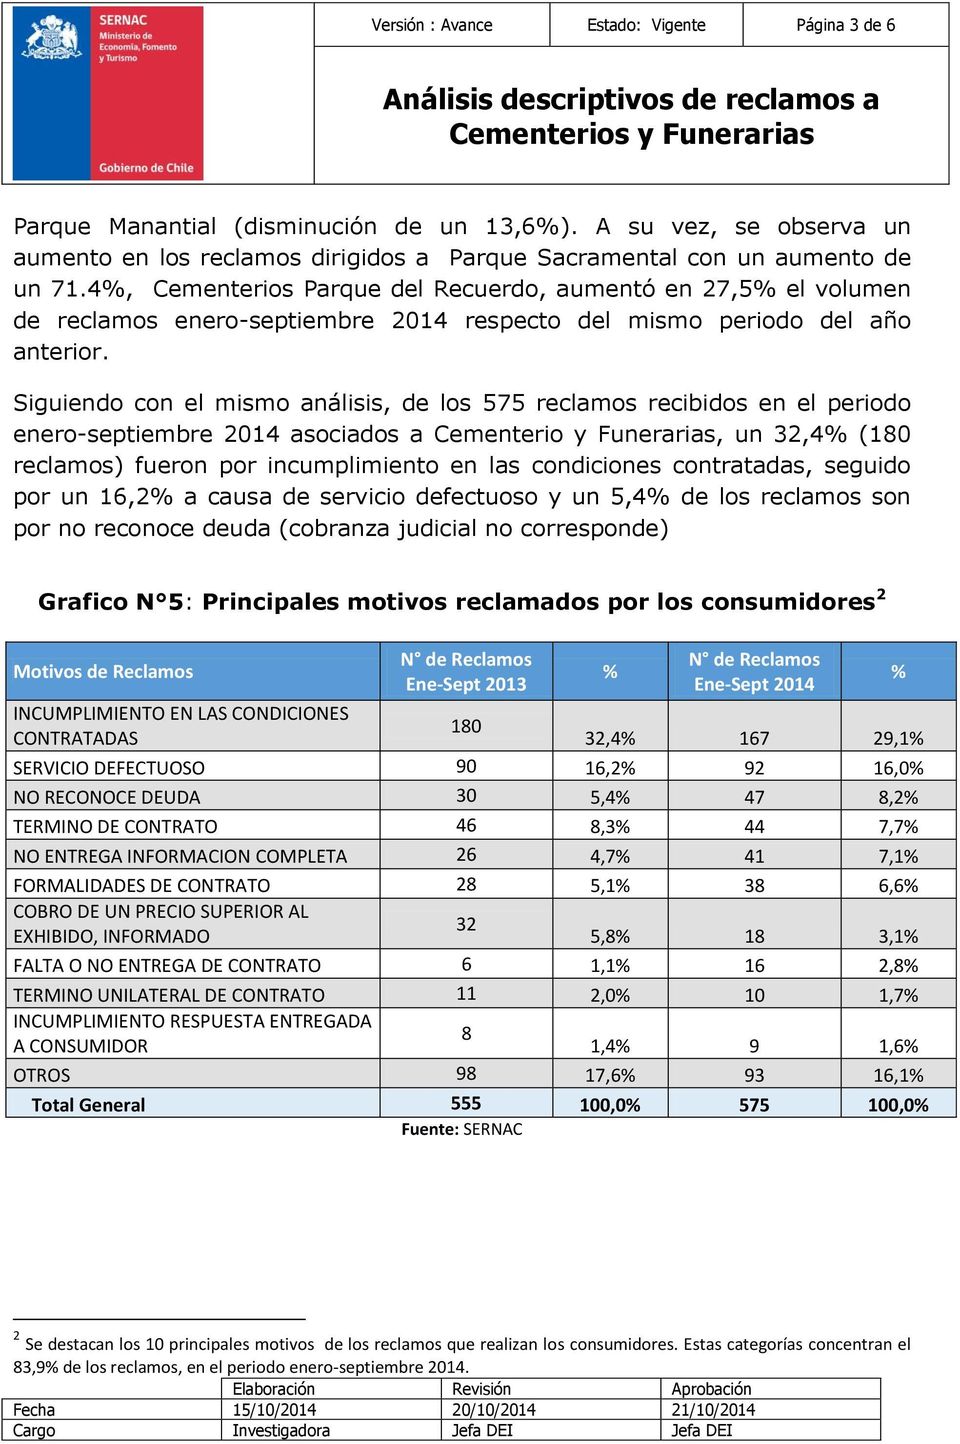 Siguiendo con el mismo análisis, de los 575 reclamos recibidos en el periodo enero-septiembre 2014 asociados a Cementerio y Funerarias, un 32,4% (180 reclamos) fueron por incumplimiento en las